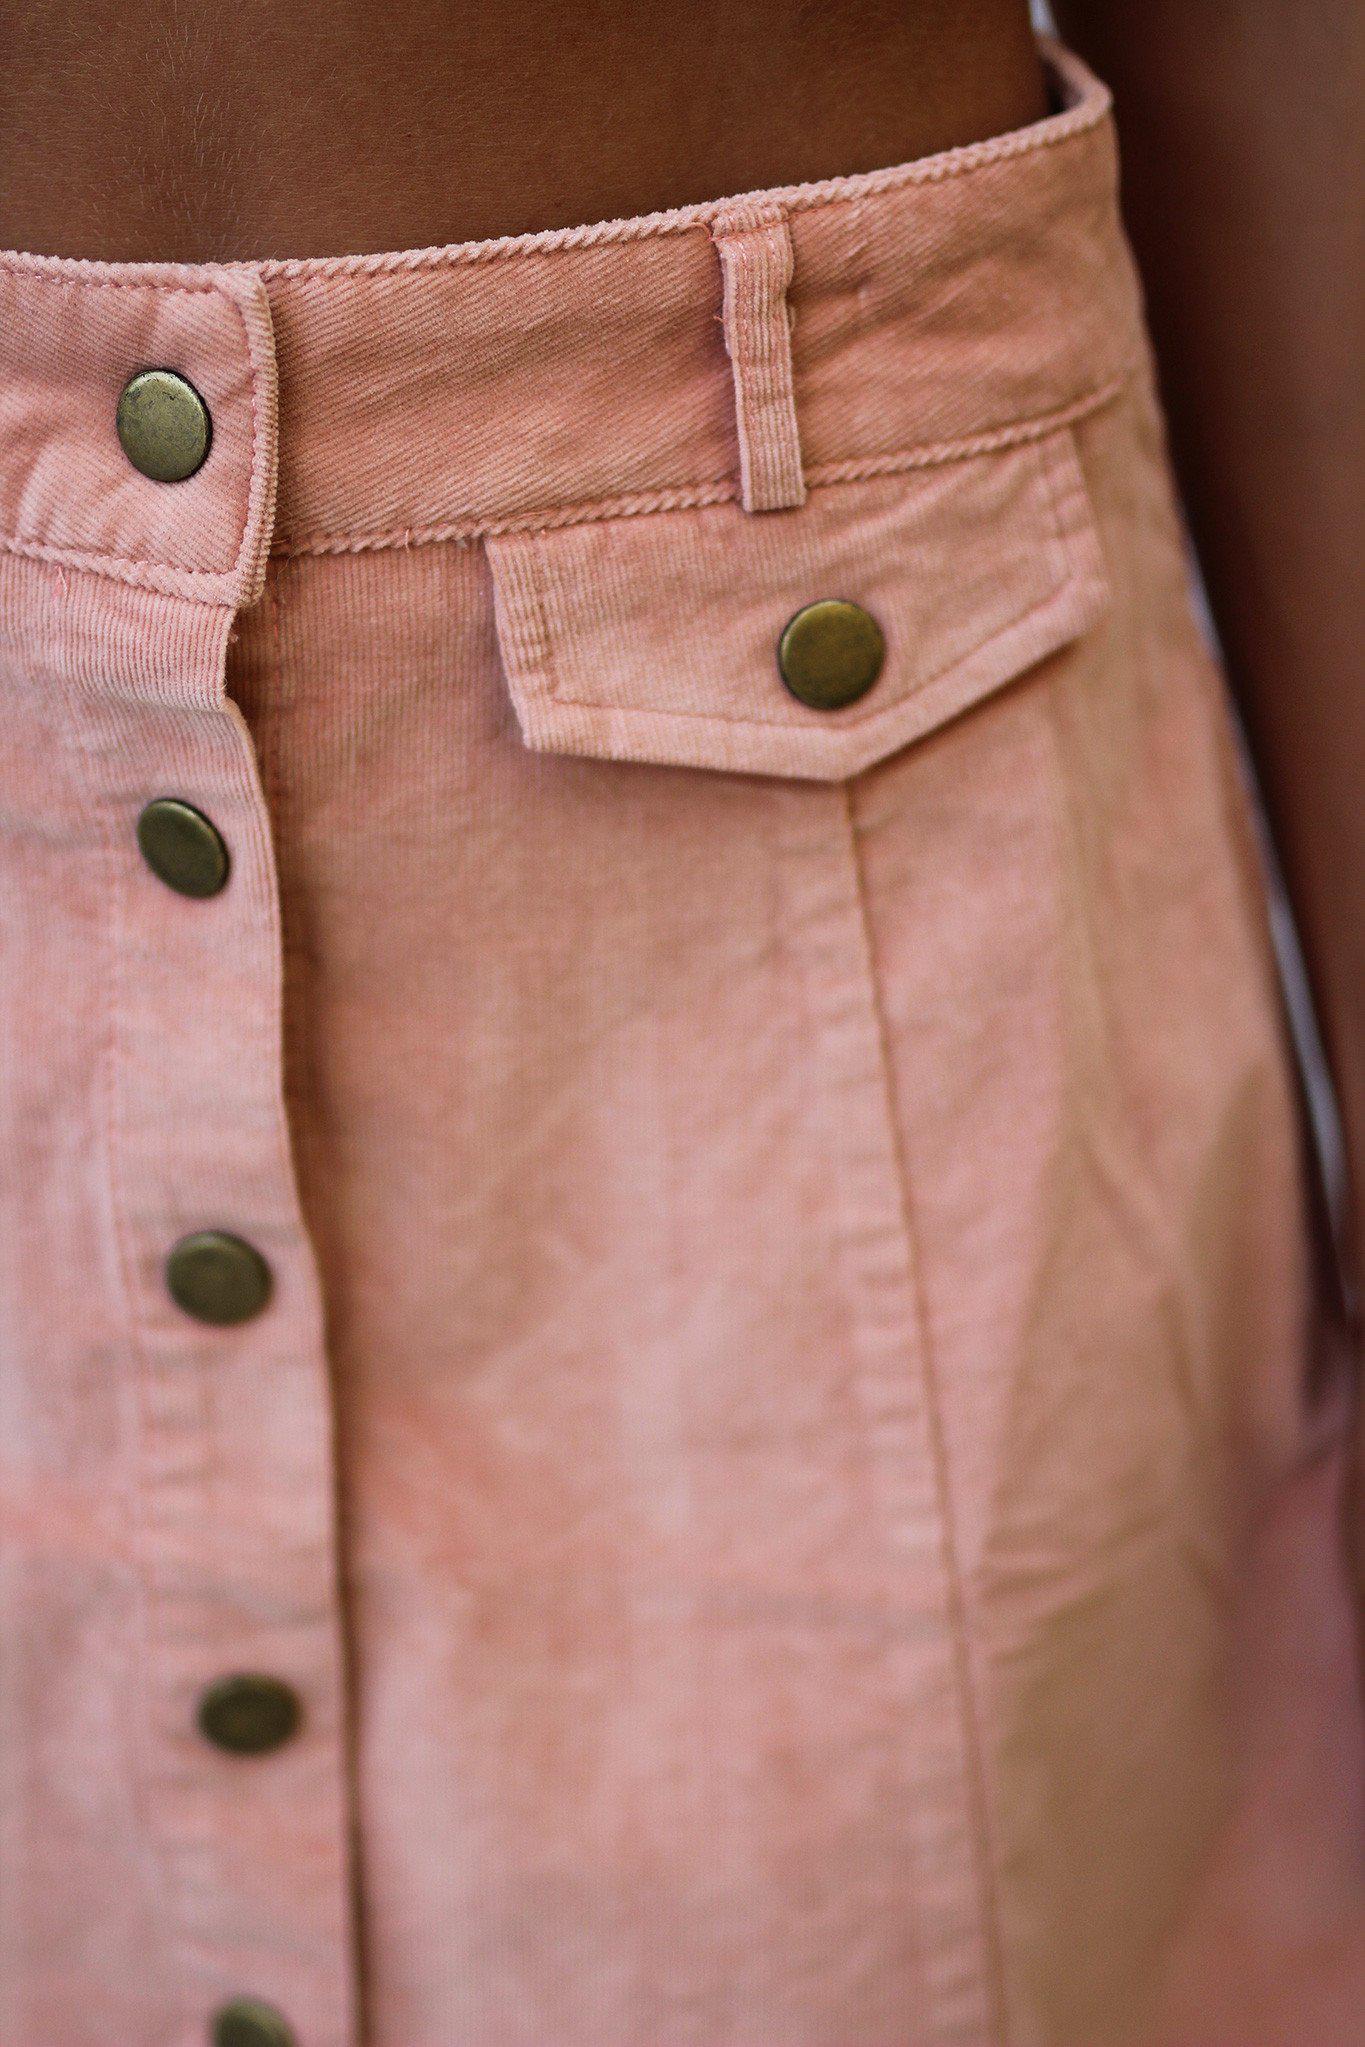 rose button up skirt